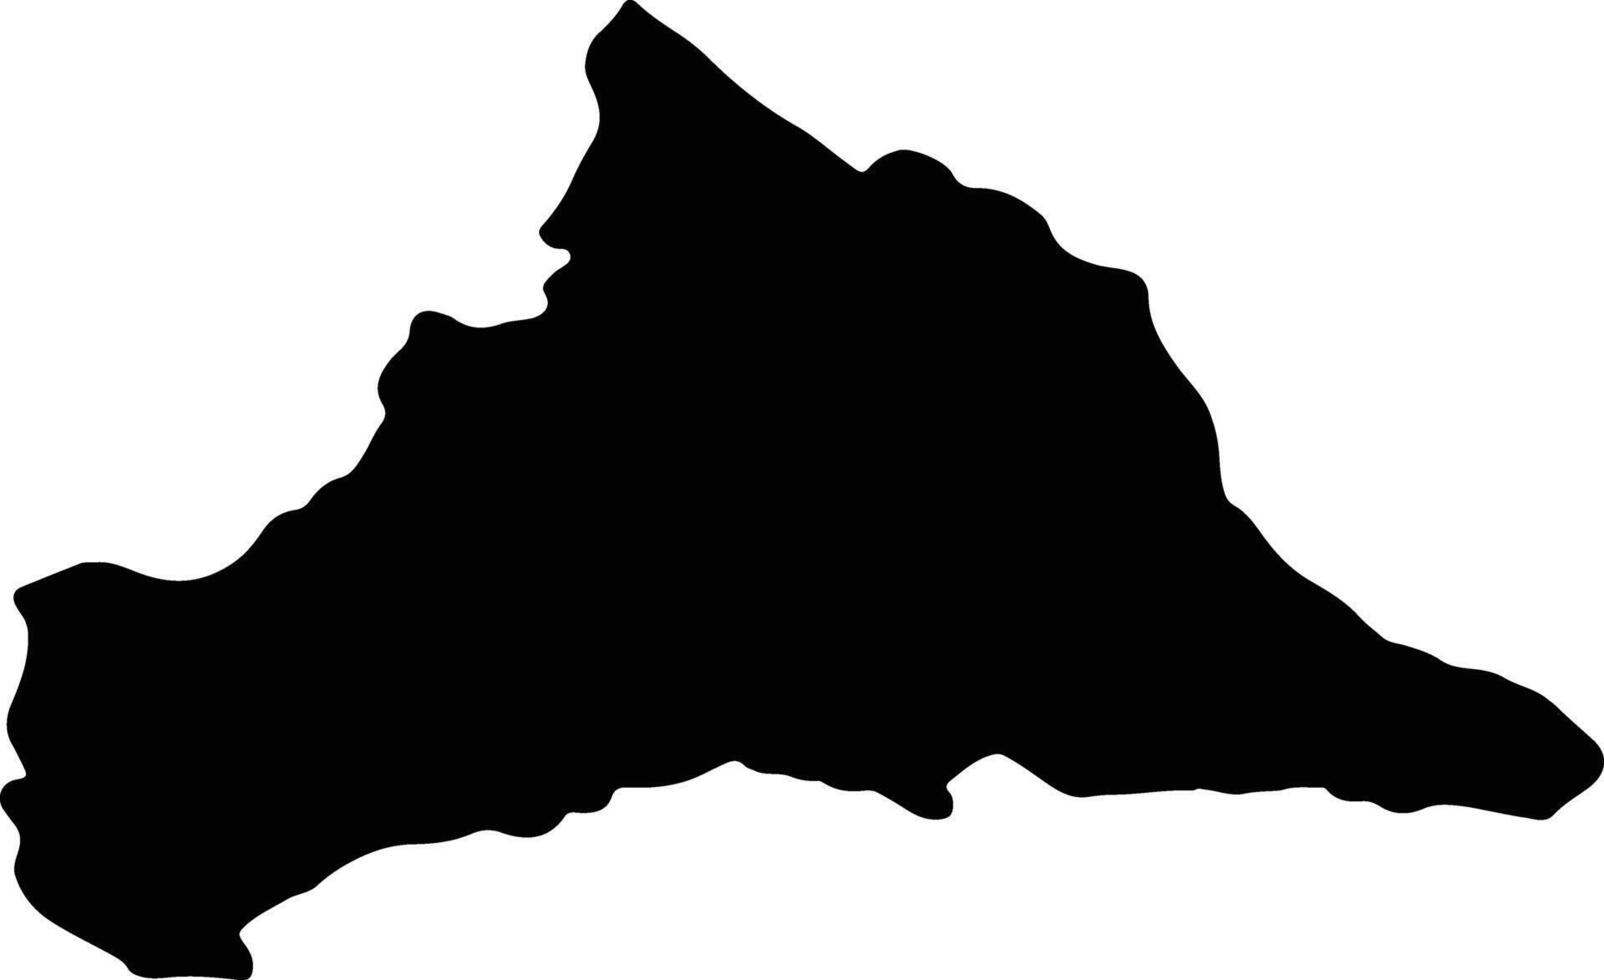 cerro largo Uruguay silhouette carte vecteur